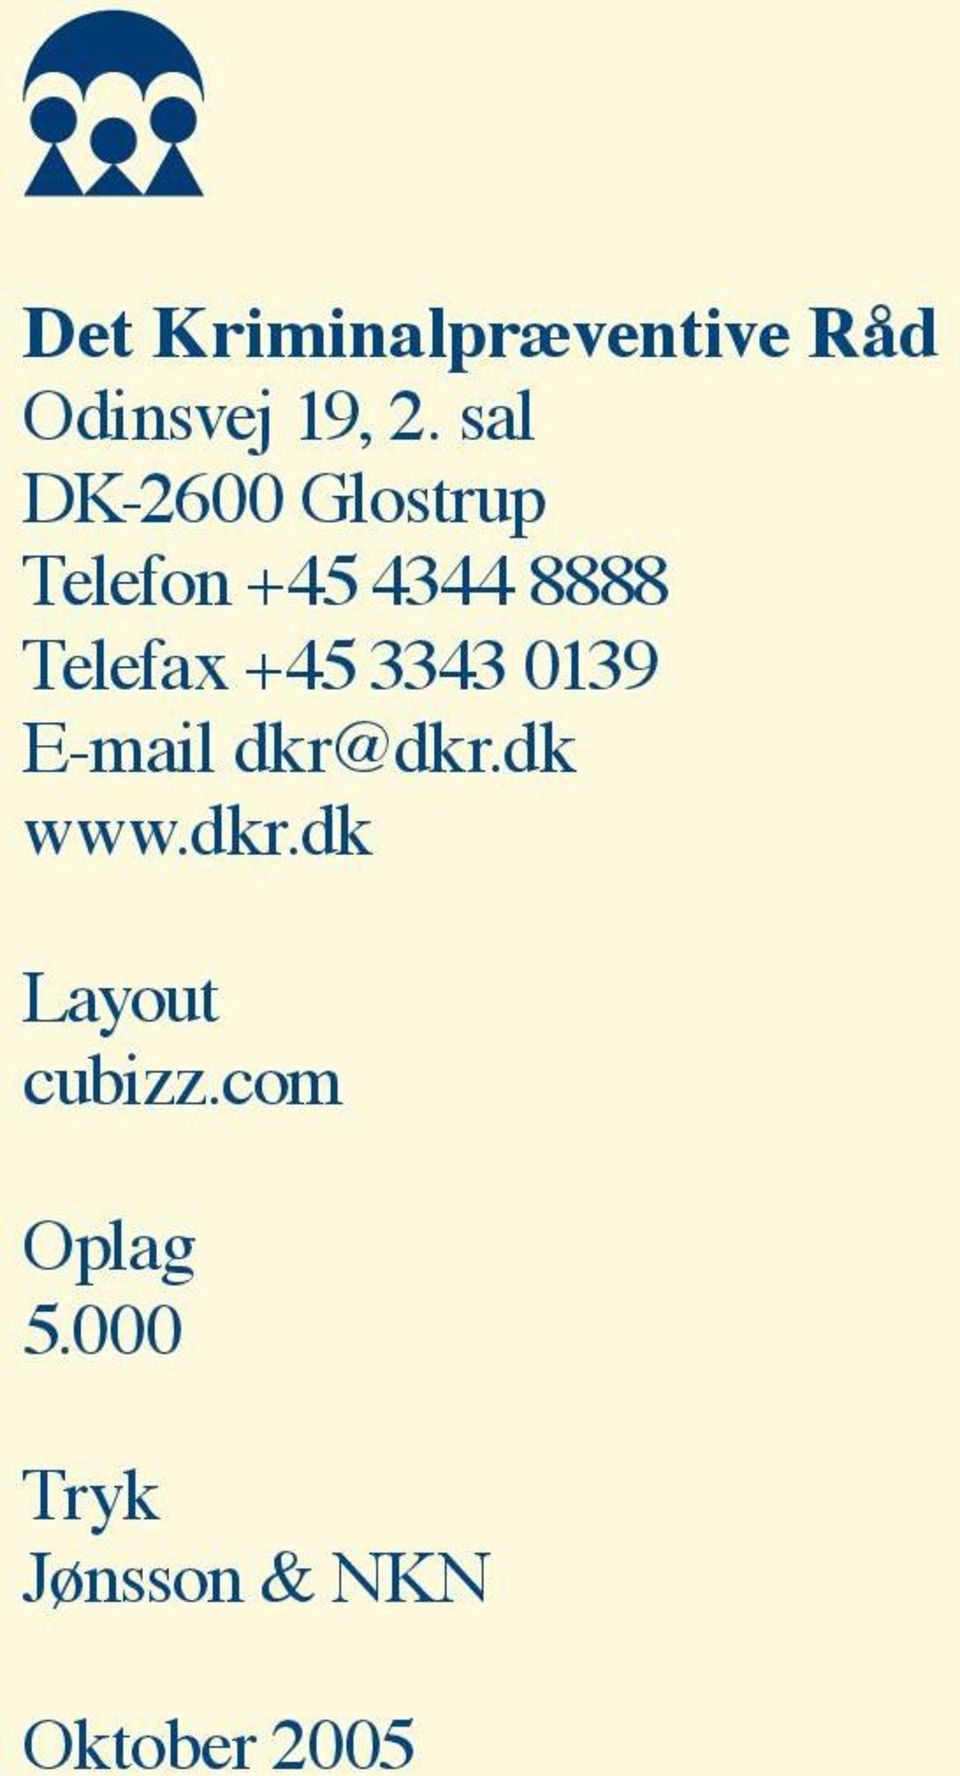 Telefax +45 3343 0139 E-mail dkr@dkr.dk www.dkr.dk Layout cubizz.